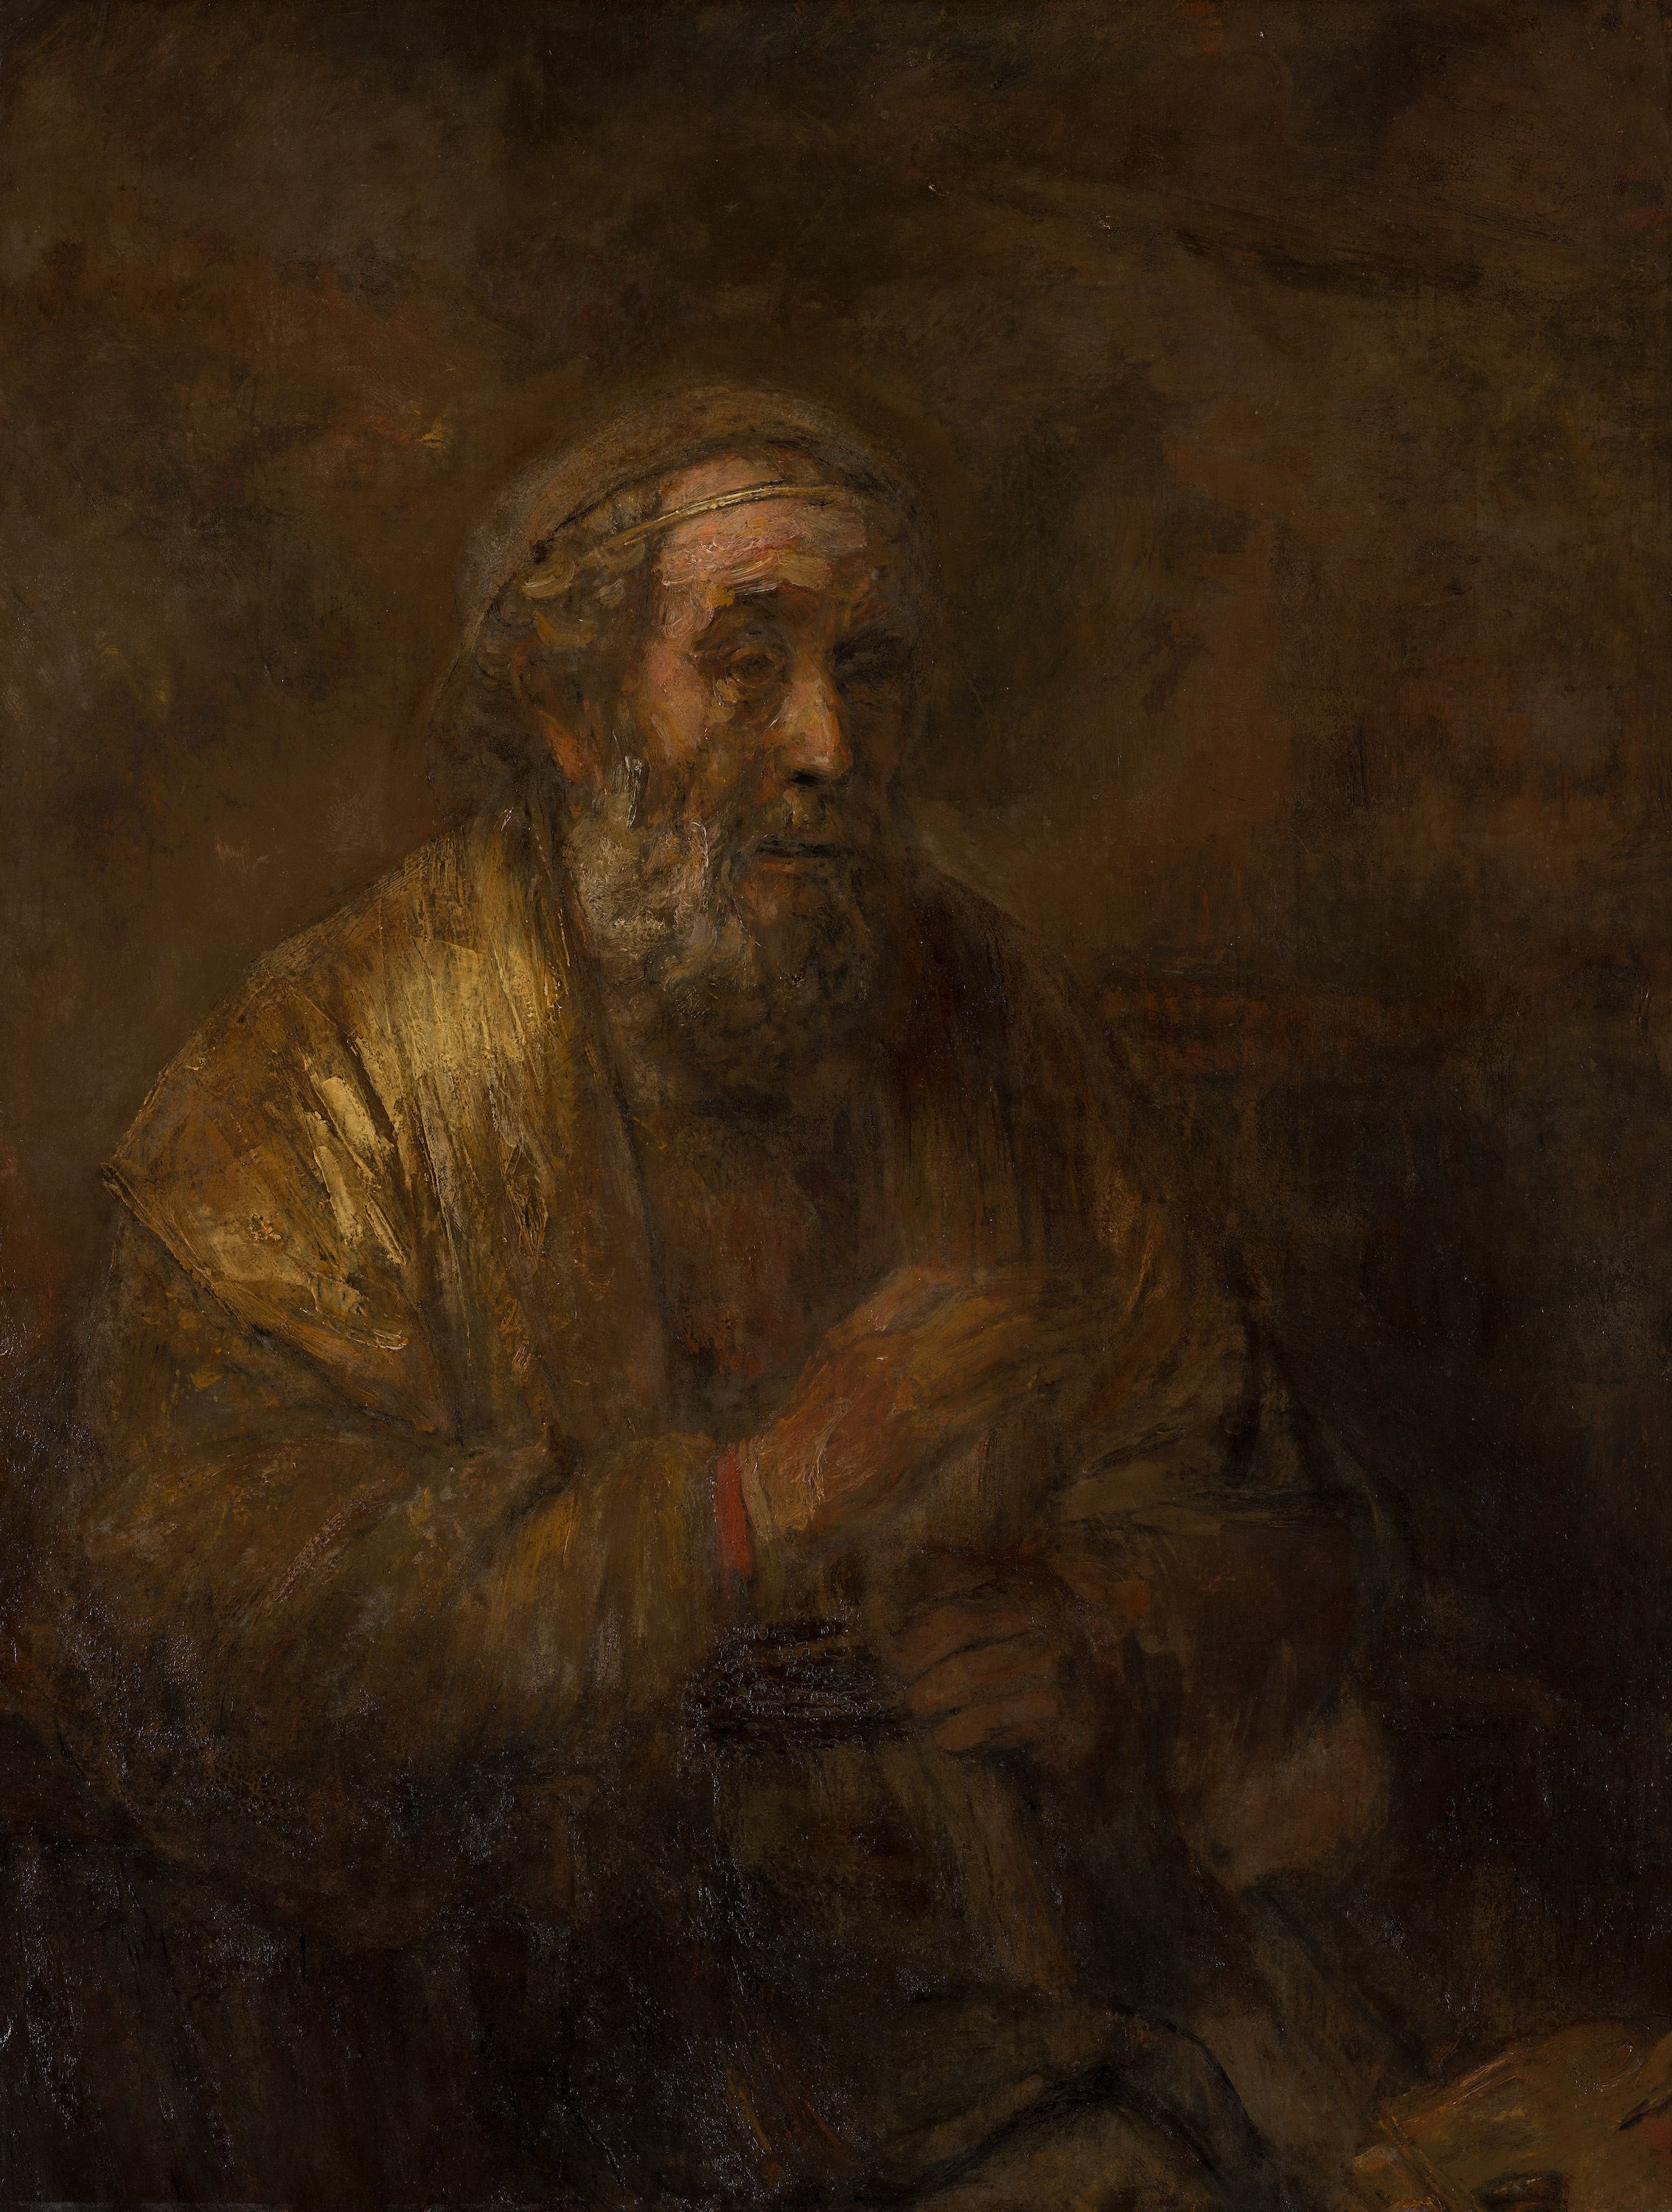 Homero by Rembrandt van Rijn - 1663 - 107 x 82 cm 